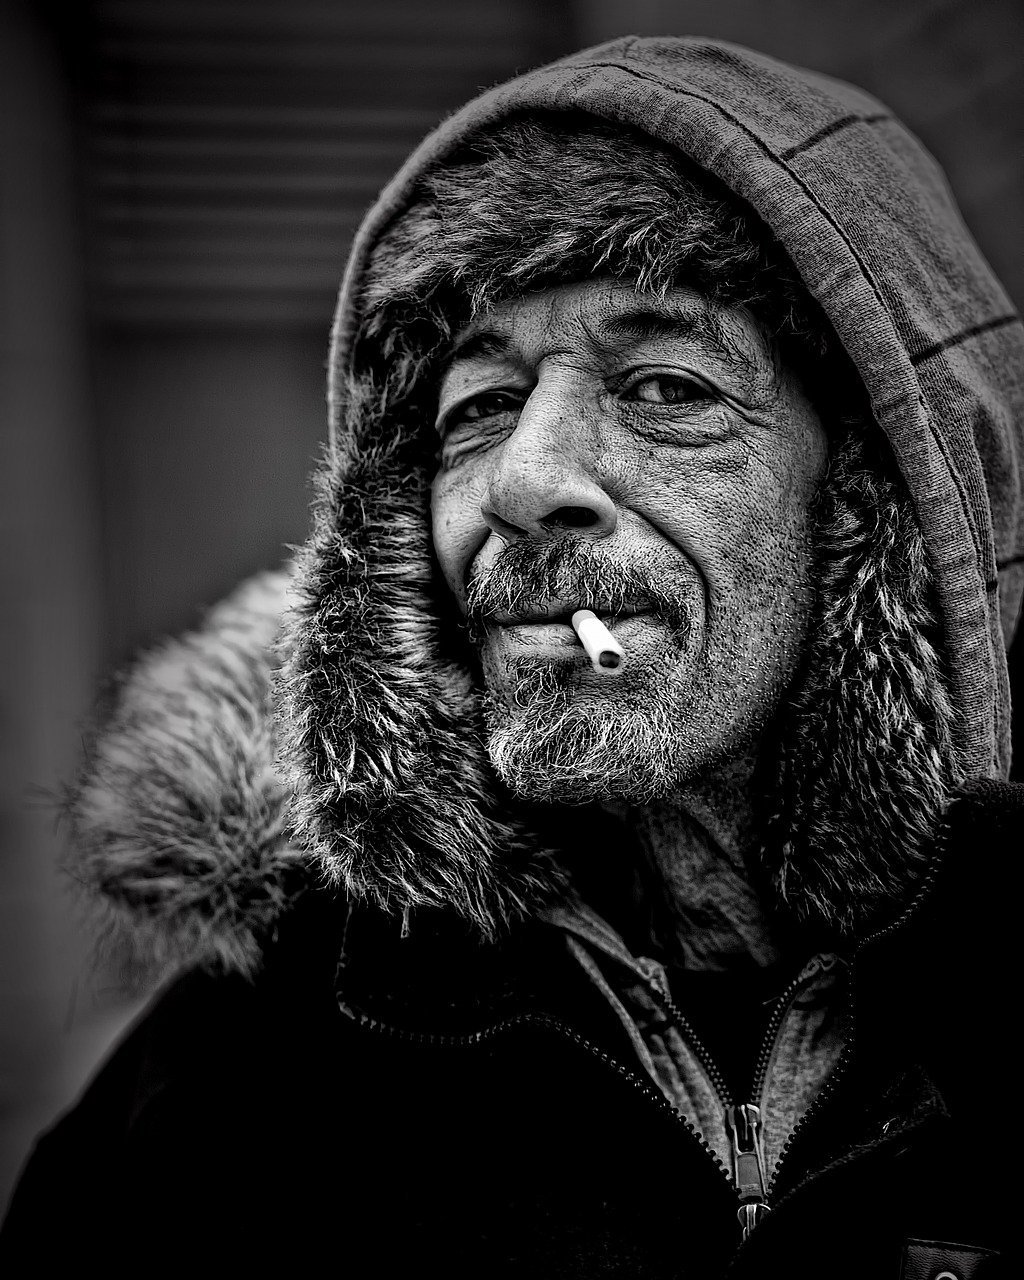 Ein Schwarz-Weiß-Bild eines Mannes mit einer Zigarette im Mund | Quelle: Pixabay/Leroy Skalstad